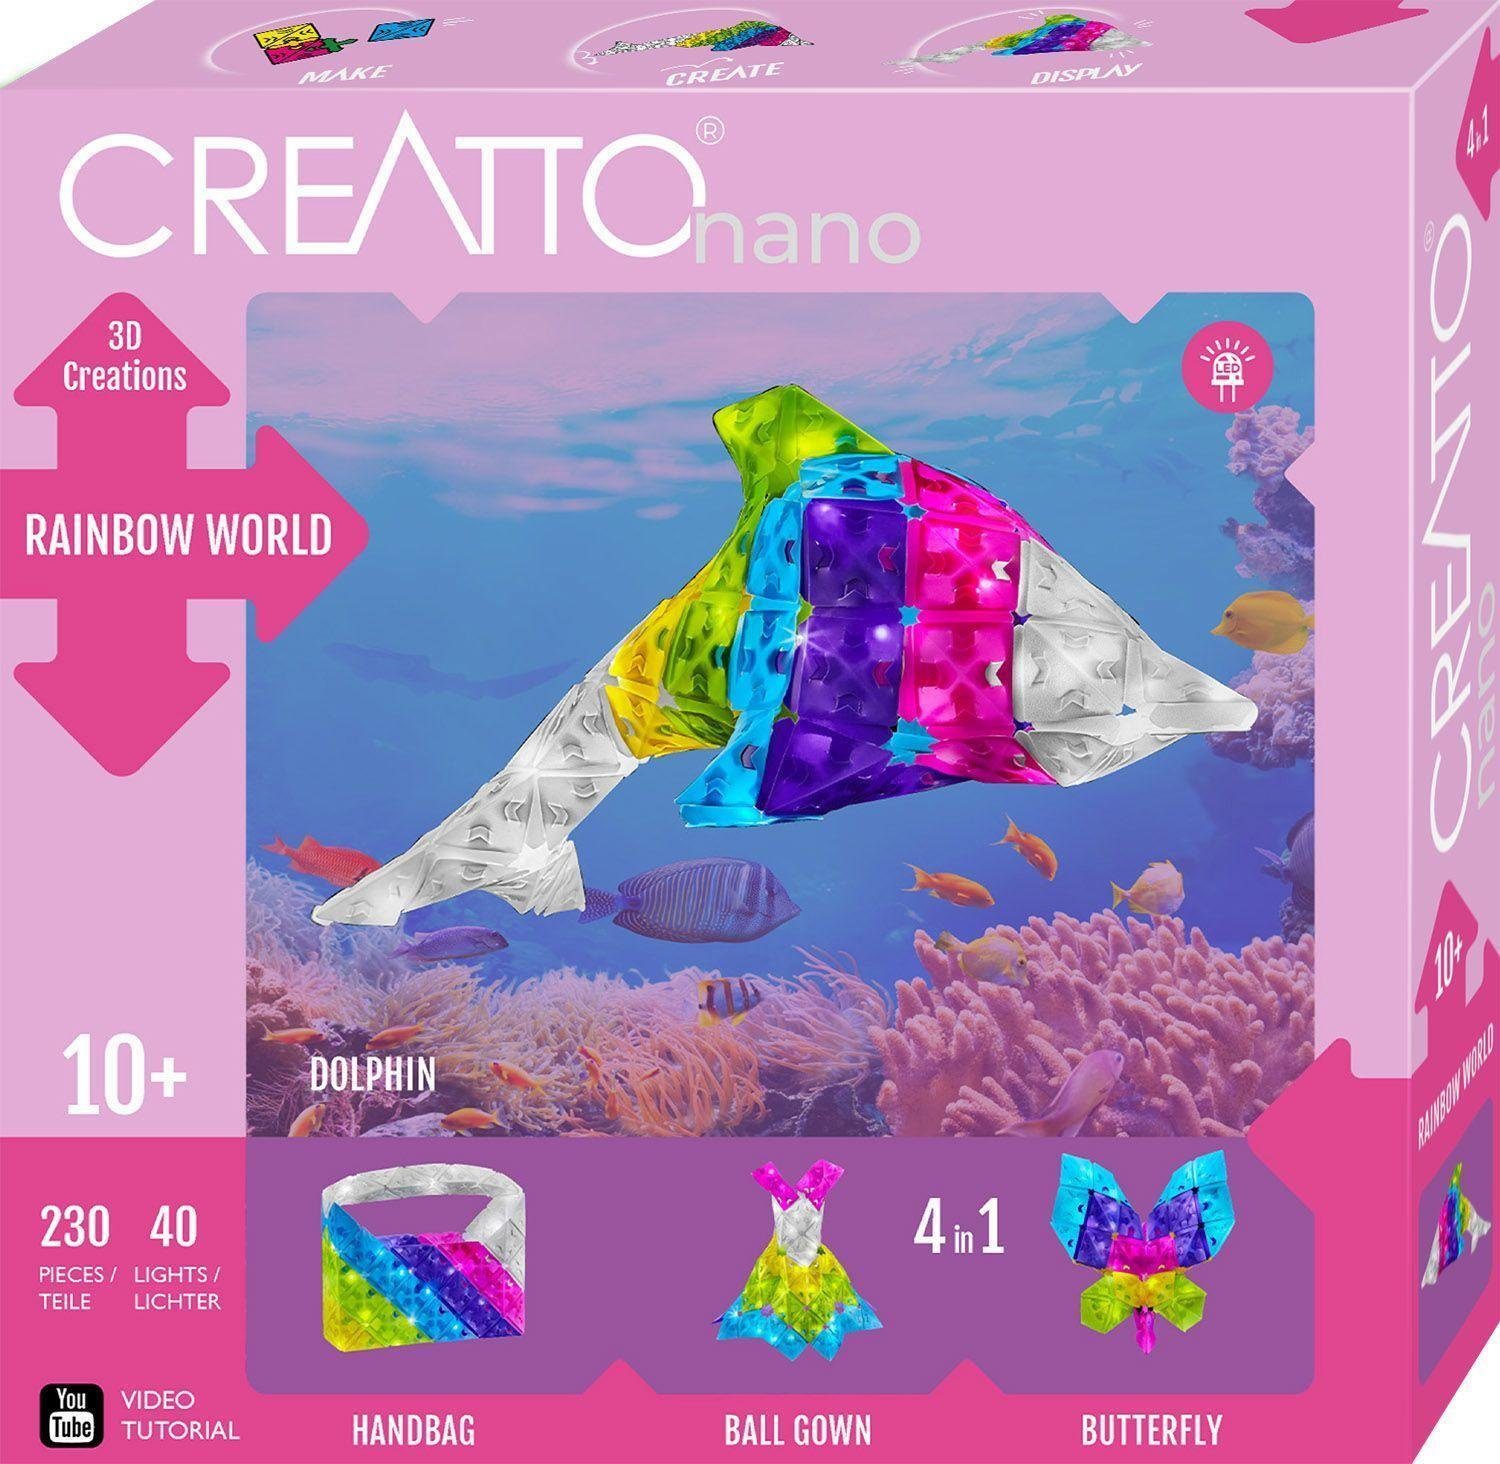 Regenbogen World, Puzzle Creatto Puzzleteile / Kosmos Rainbow